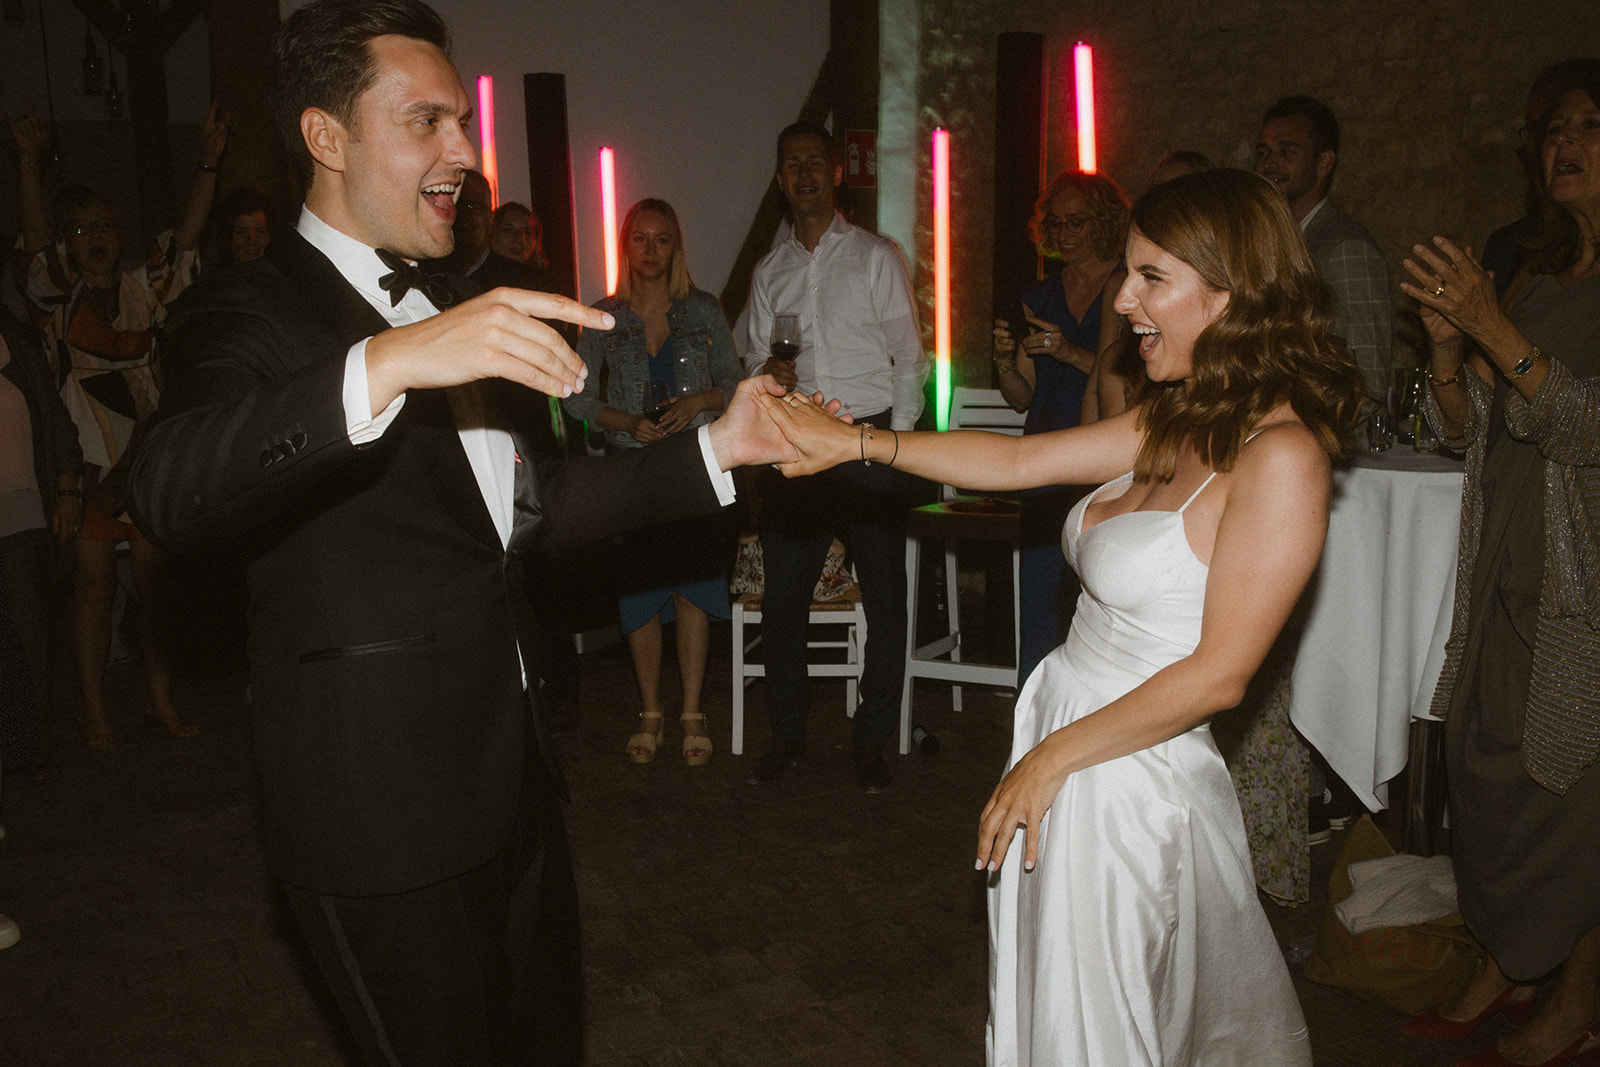 Brautpaar tanzt und feiert auf der Tanzfläche